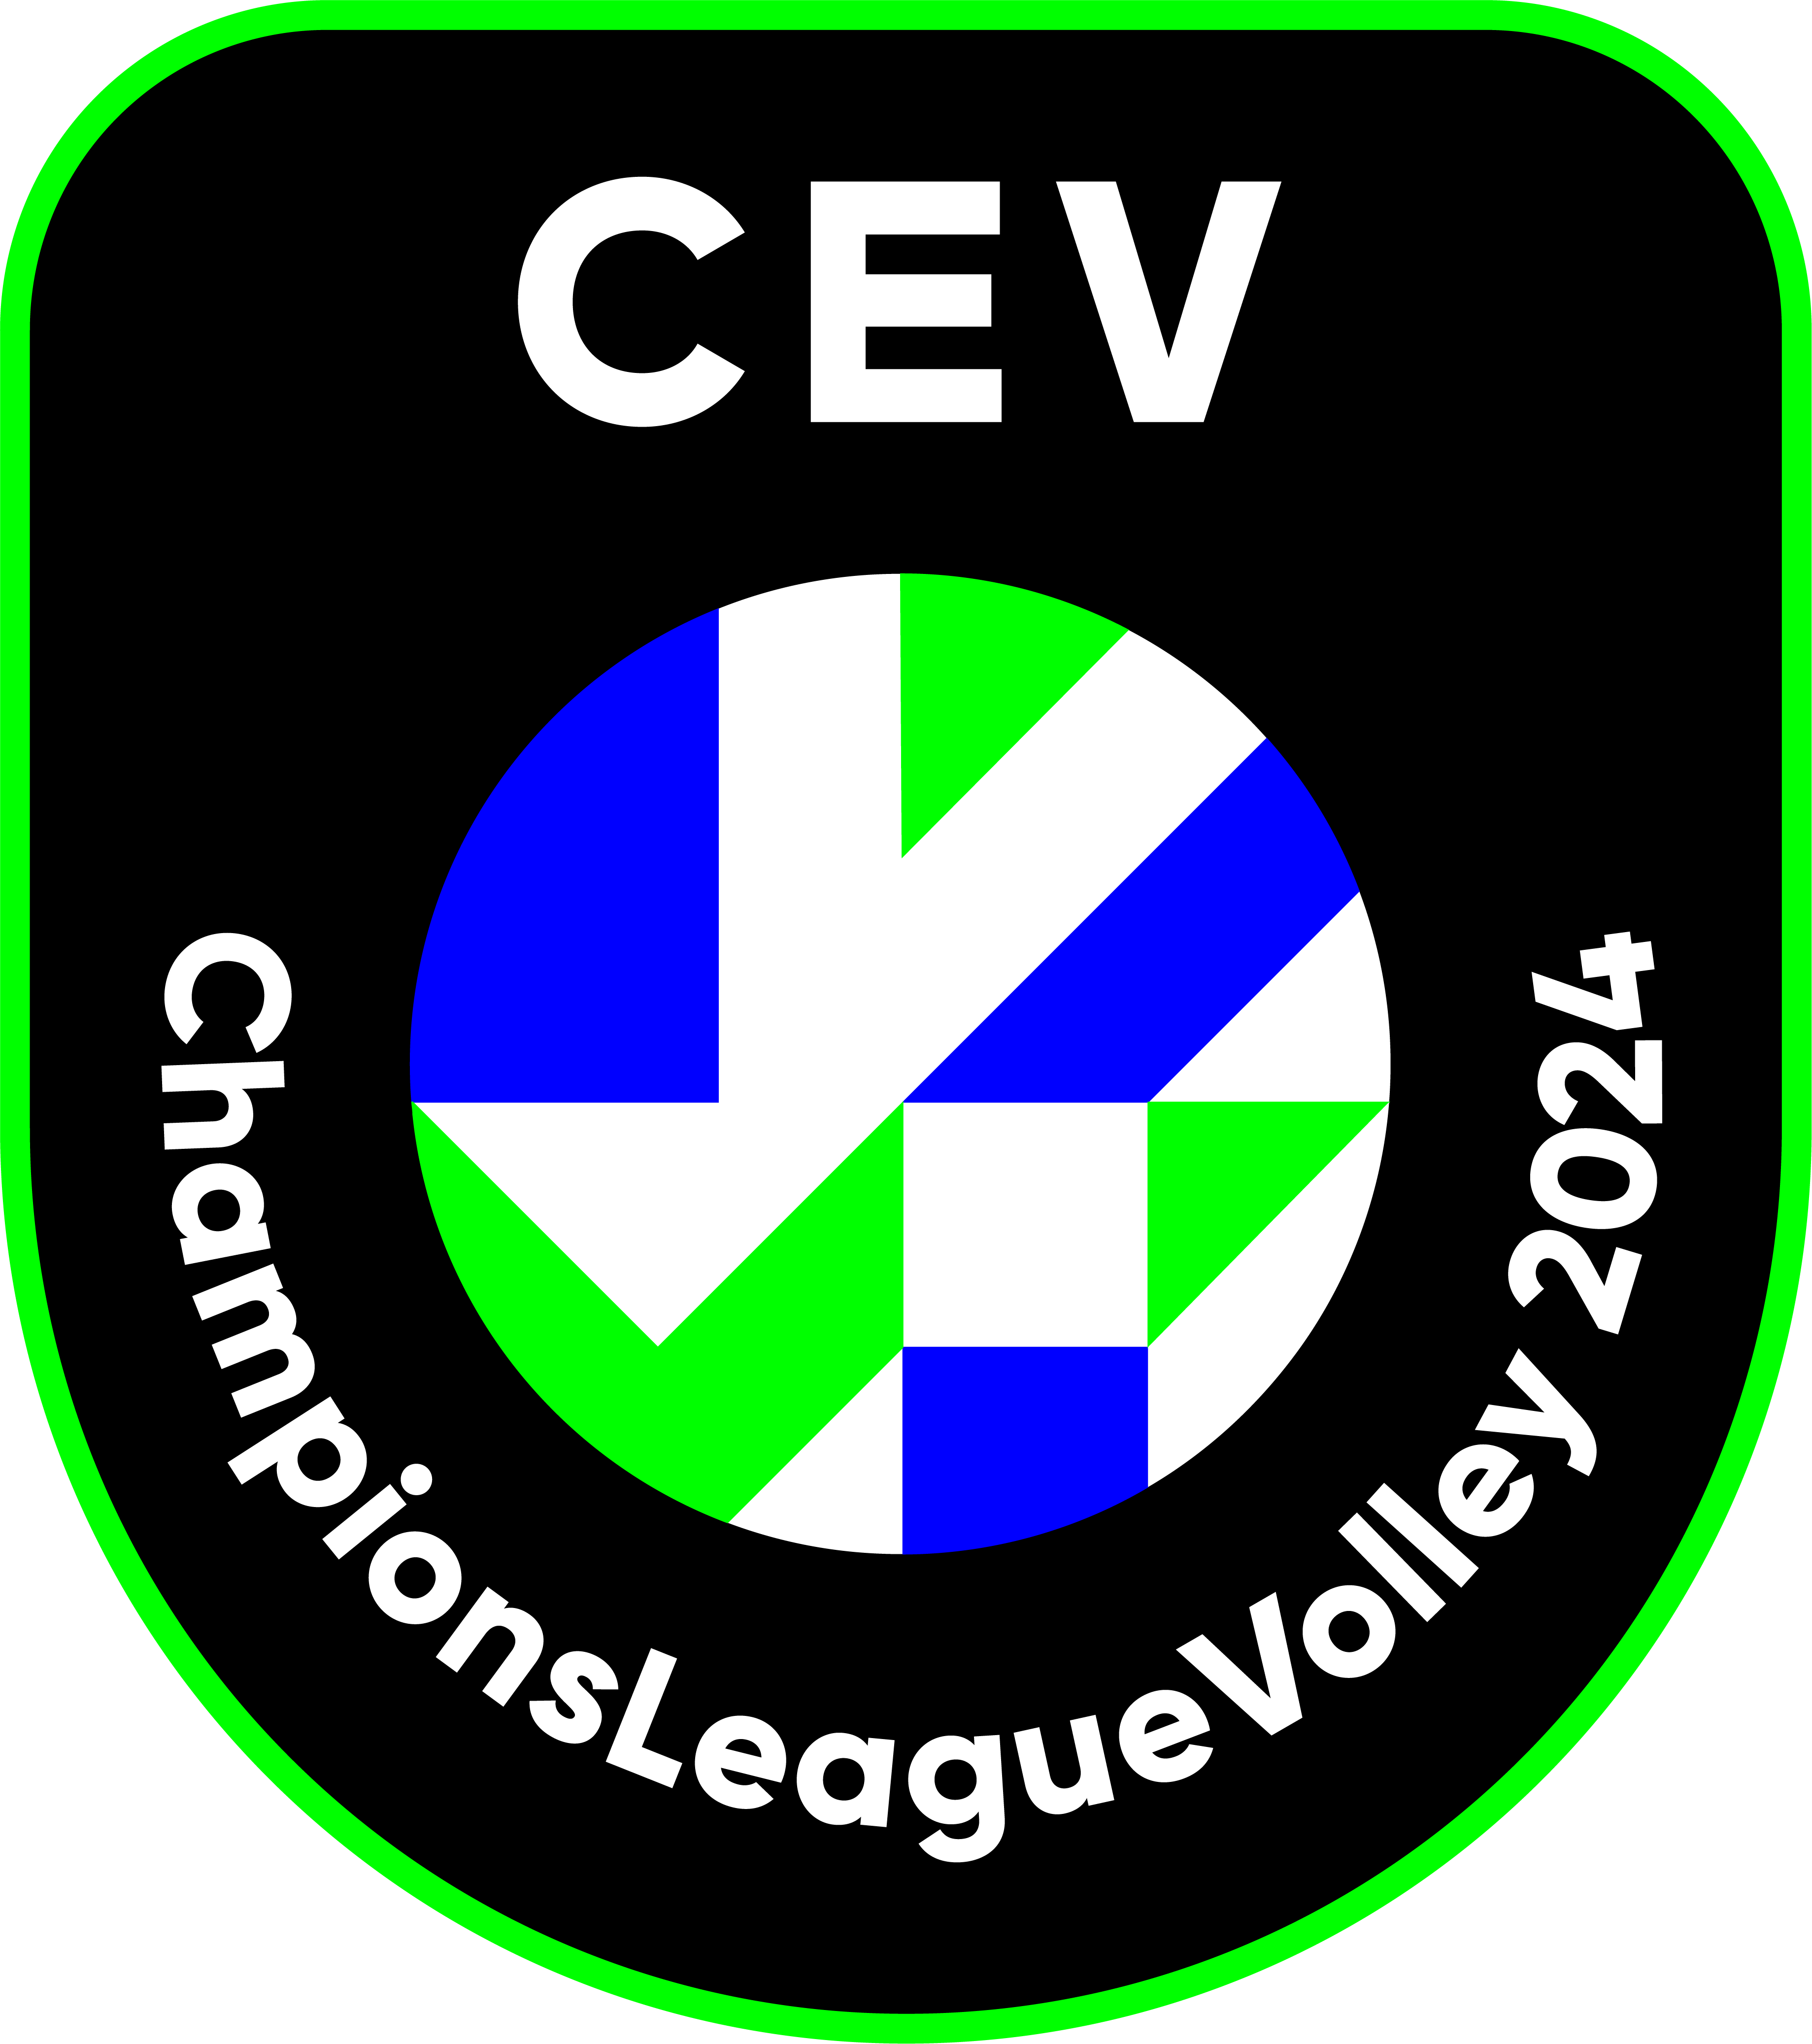 CEV Şampiyonlar Ligi